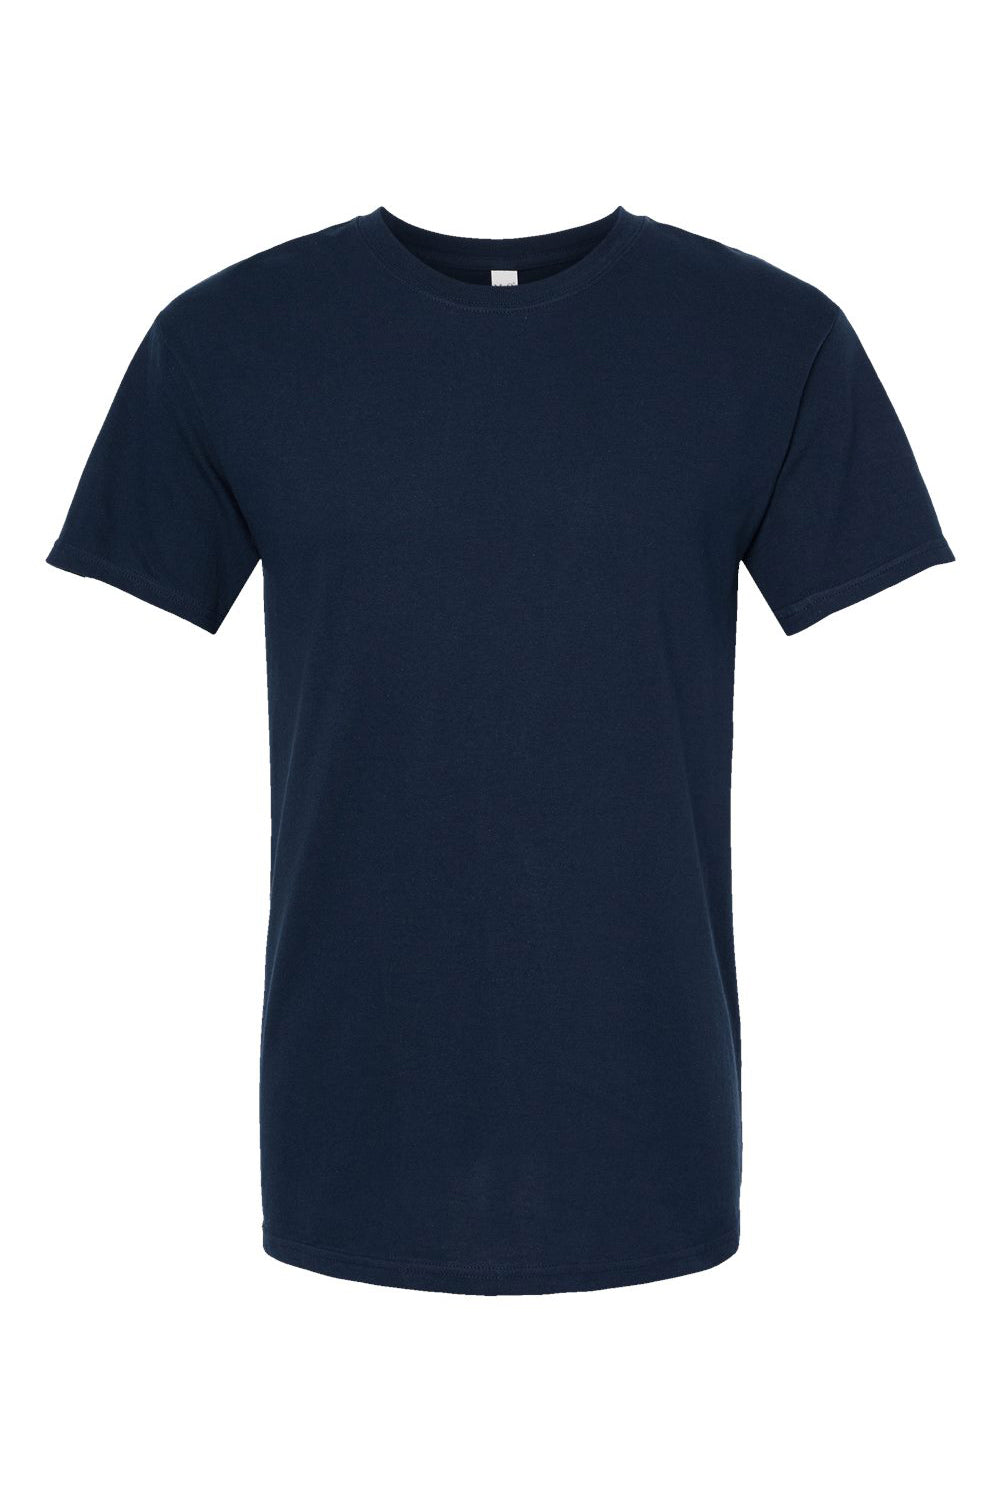 M&O 4800 Mens Gold Soft Touch Short Sleeve Crewneck T-Shirt Deep Navy Blue Flat Front